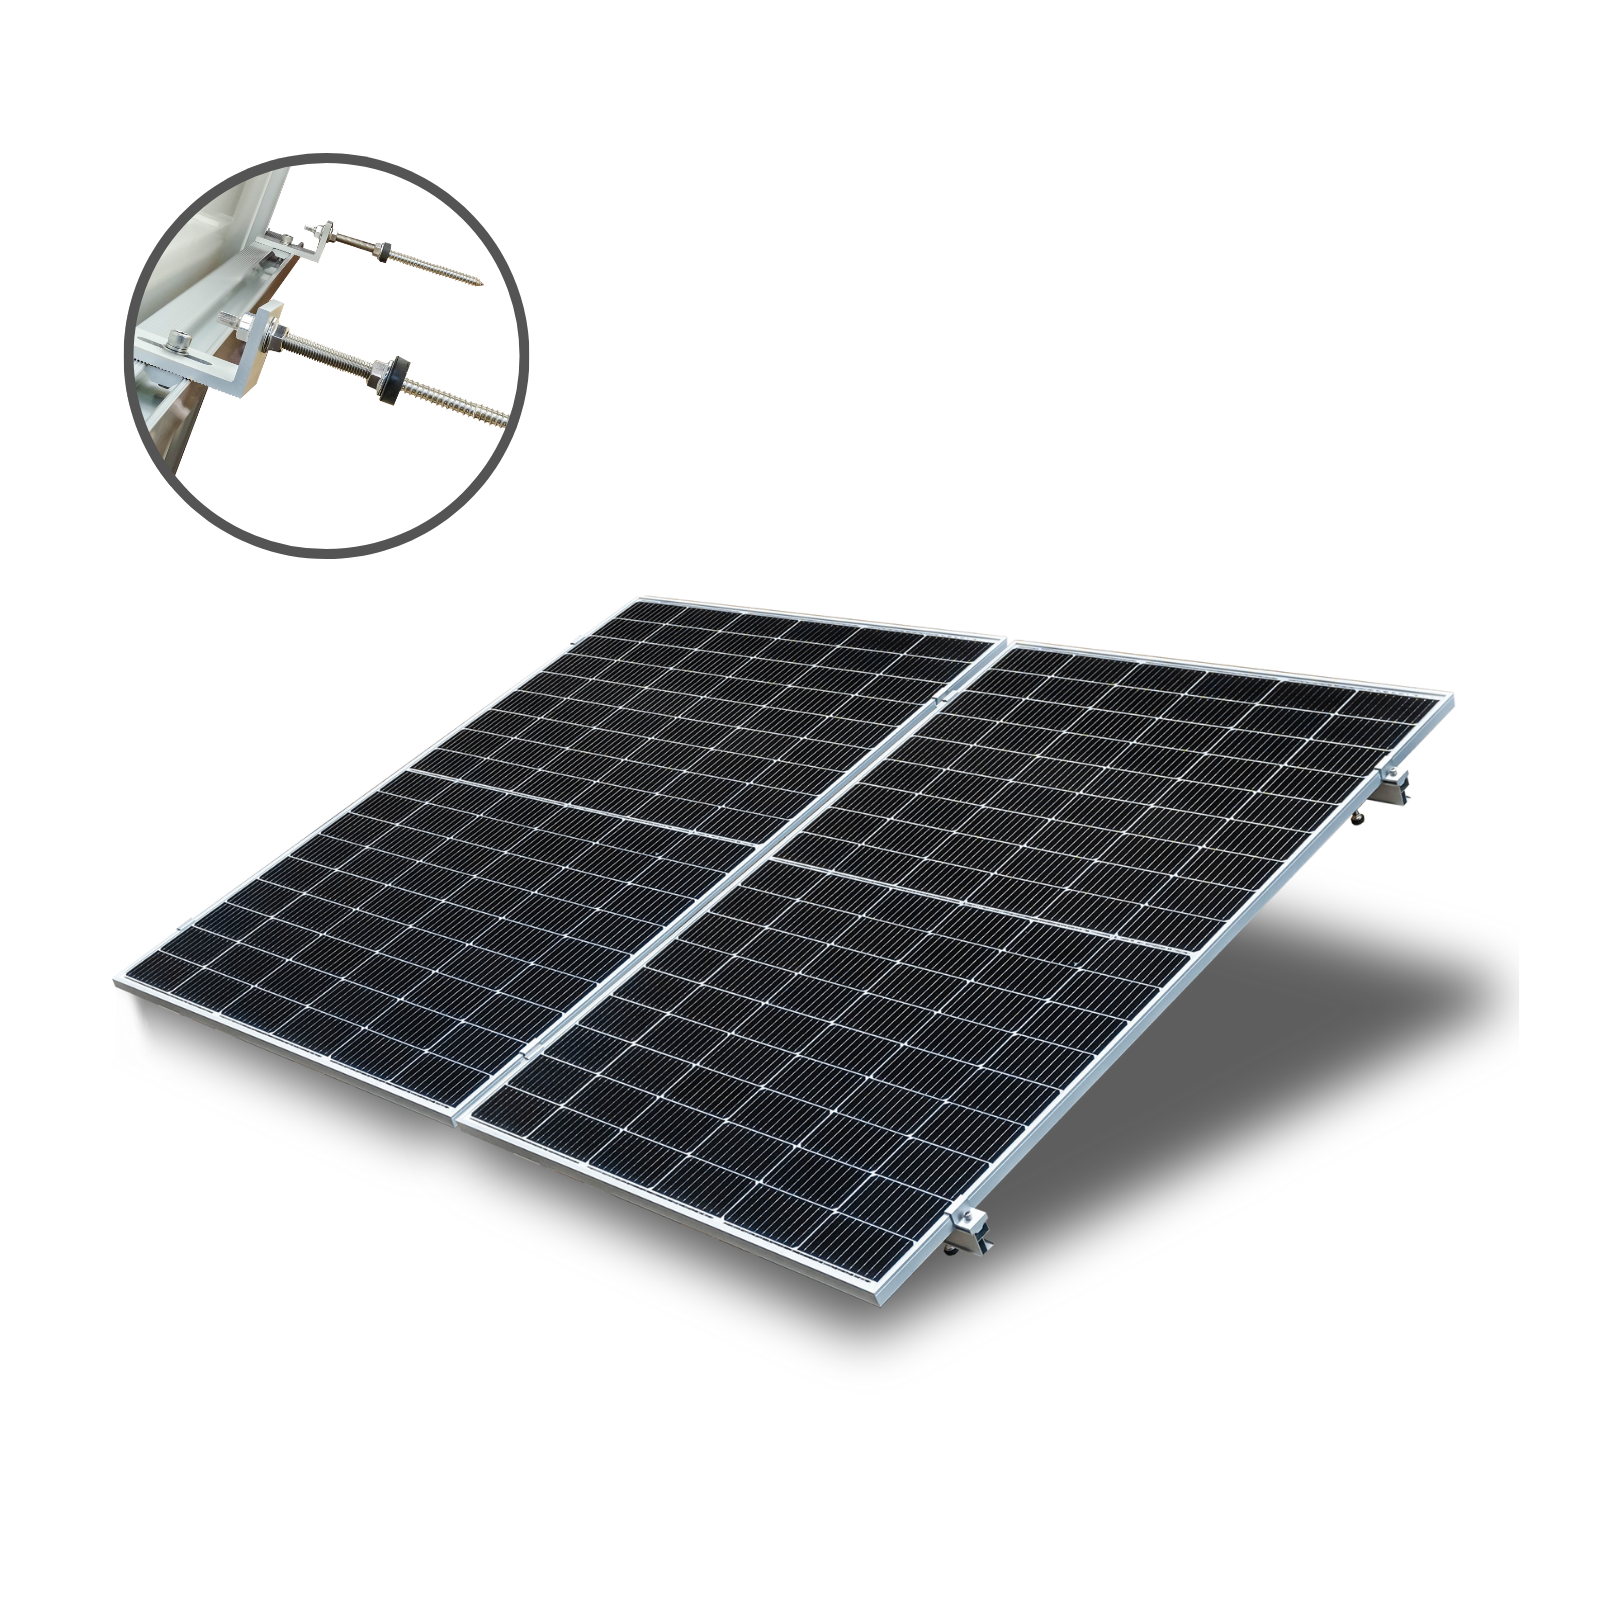 SMARTEC SOLAR ALLin Stockschrauben Halterungs-Set Hochkant-Verlegung Halterung Solar Solarmodul